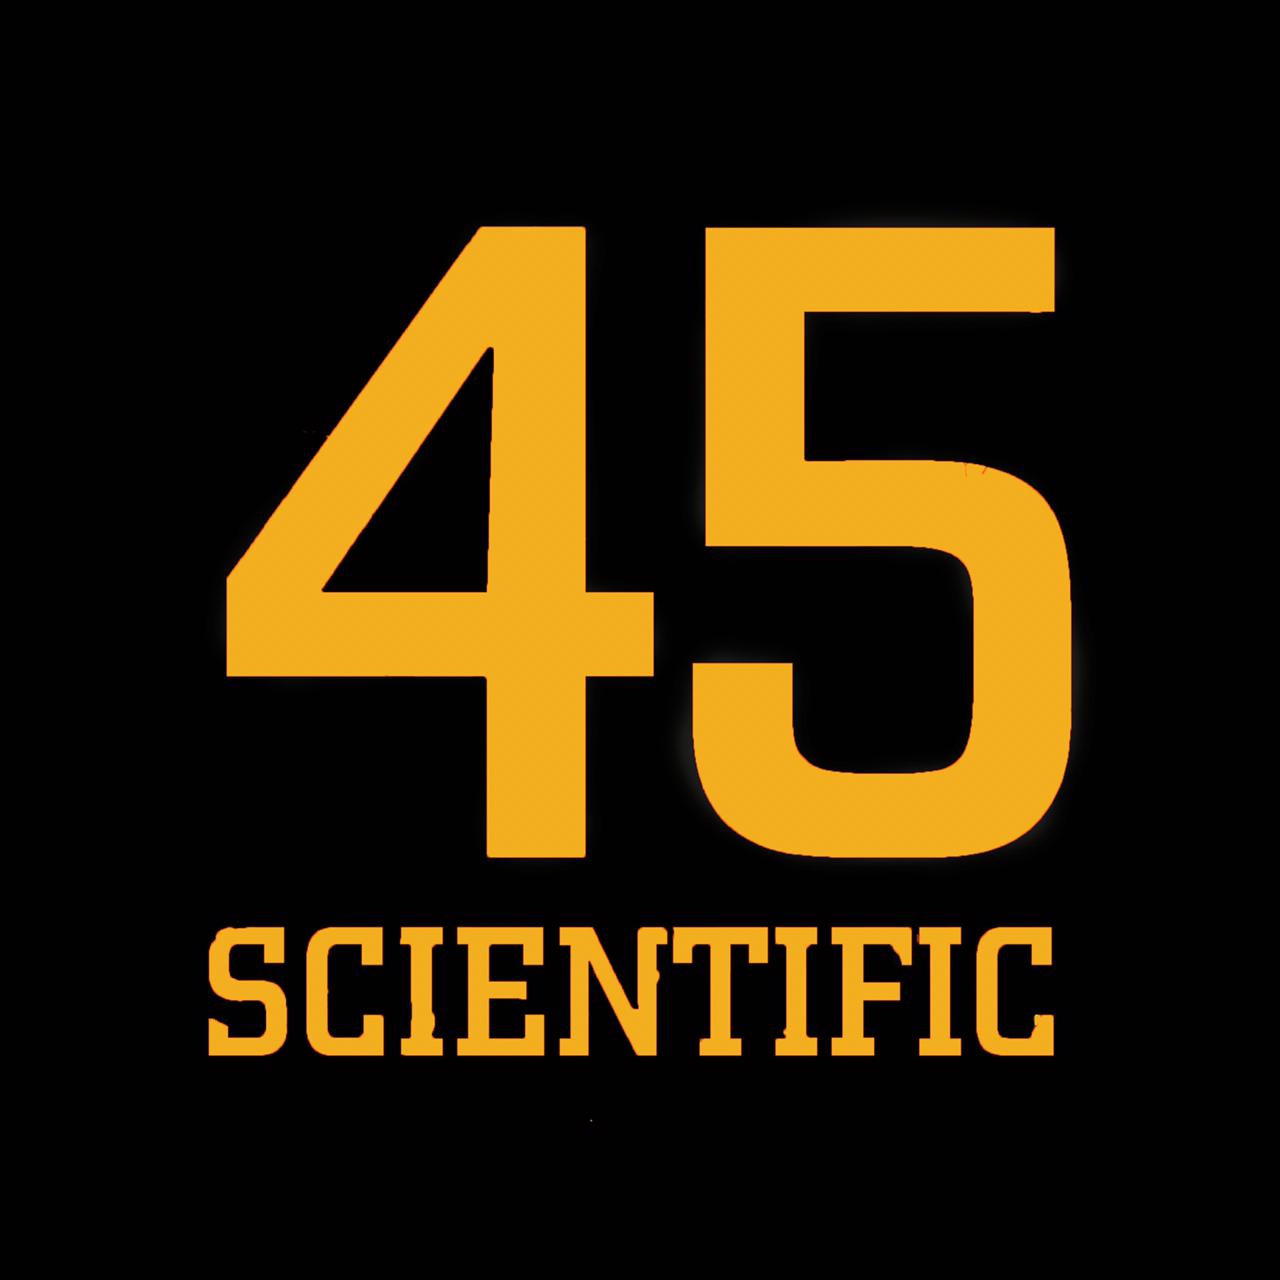 s45 SCIENTIFIC